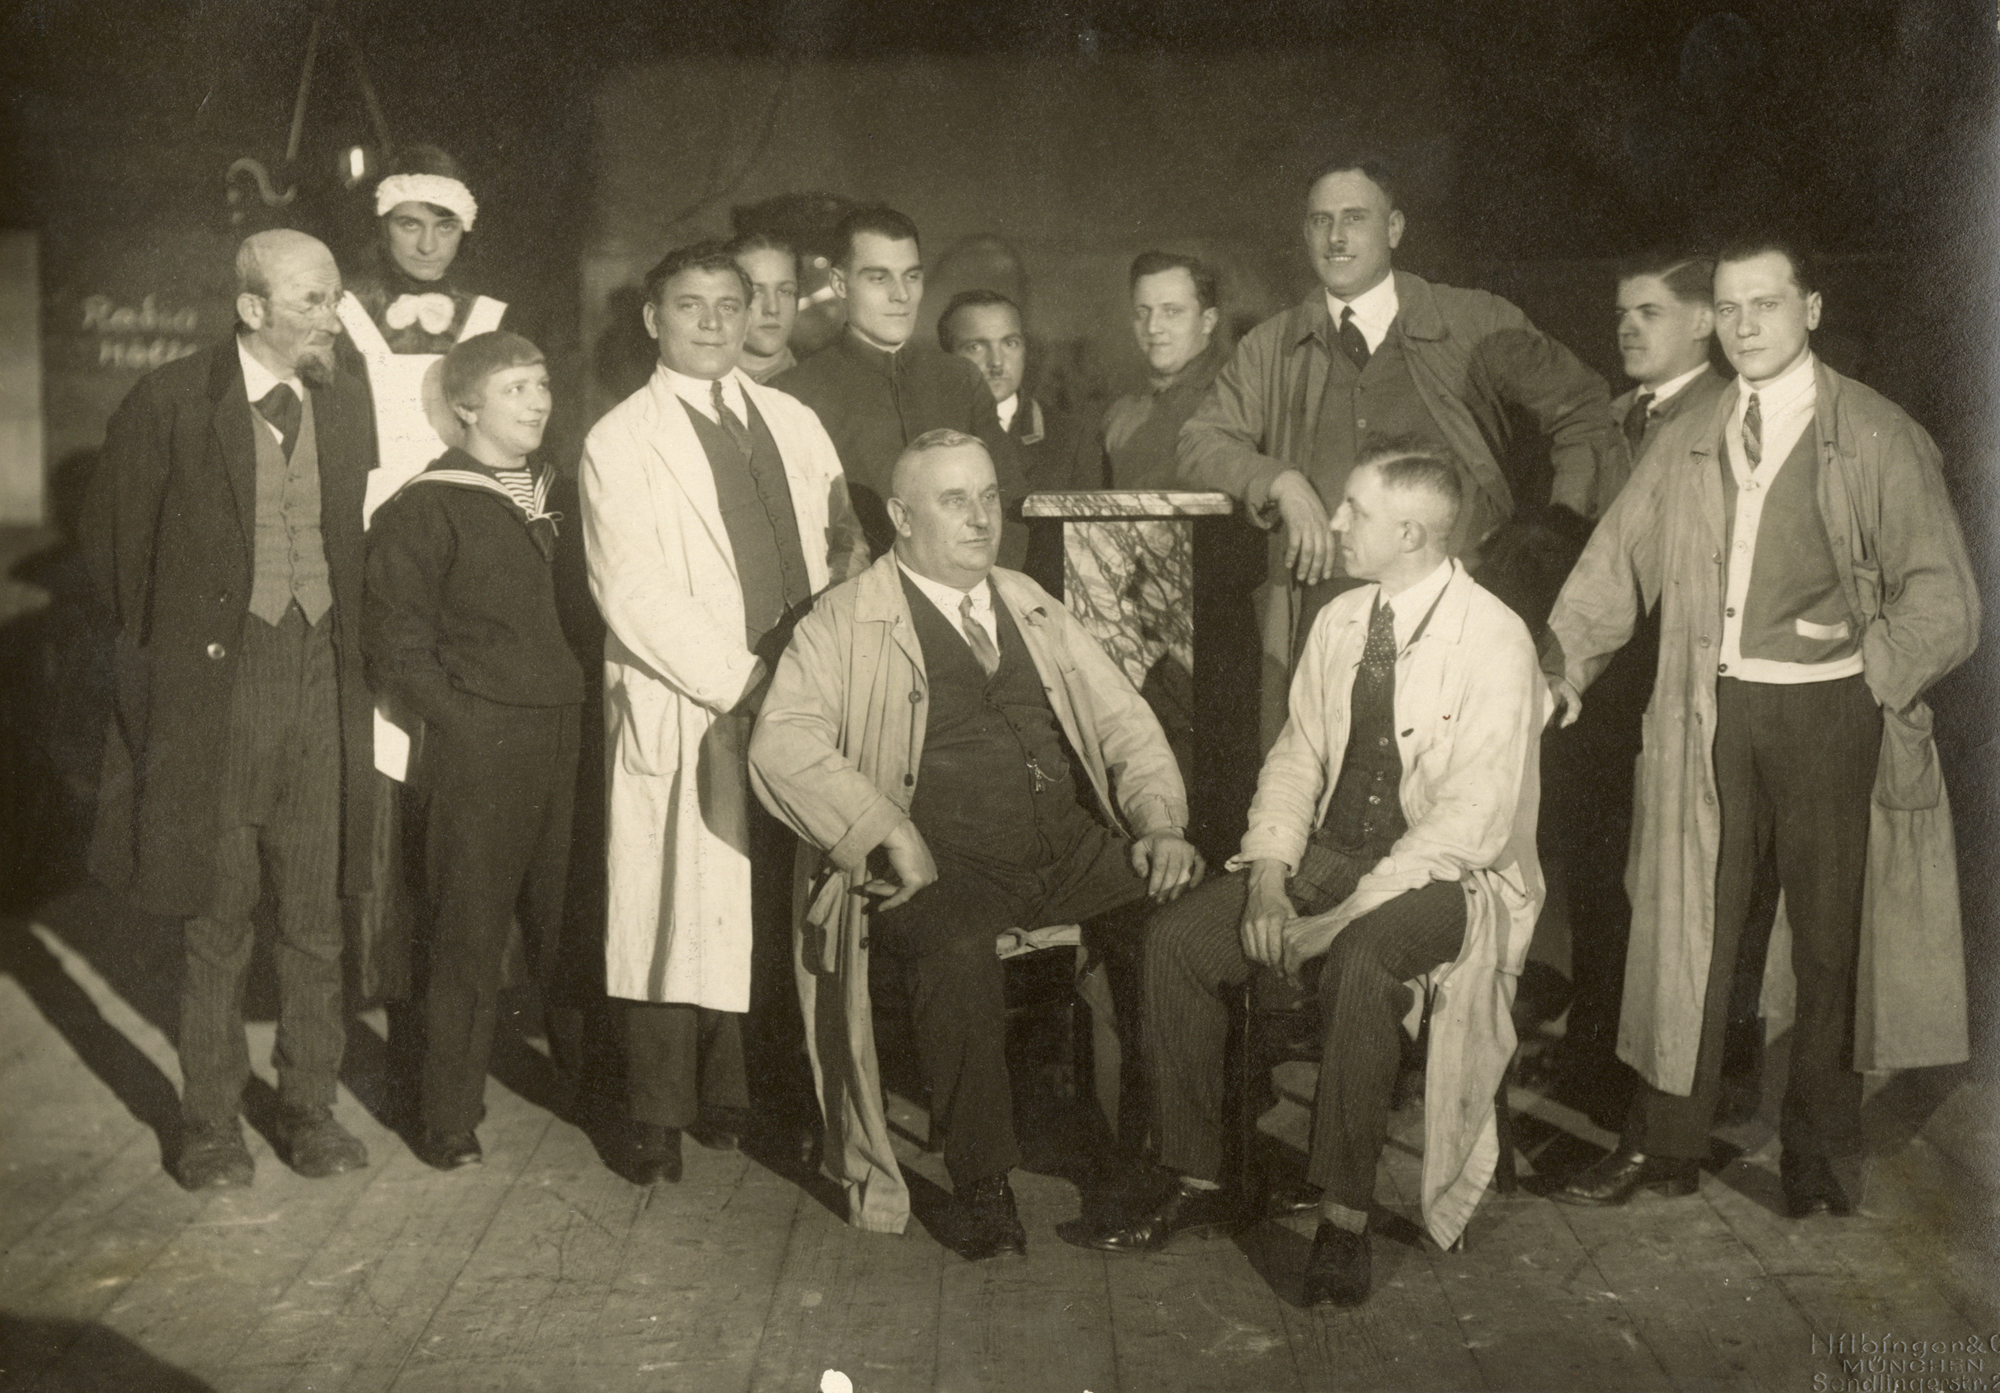 Gruppenfoto, Das Team um Karl Valentin bei der Aufführung von Der Bittsteller, Kolosseum, 1930